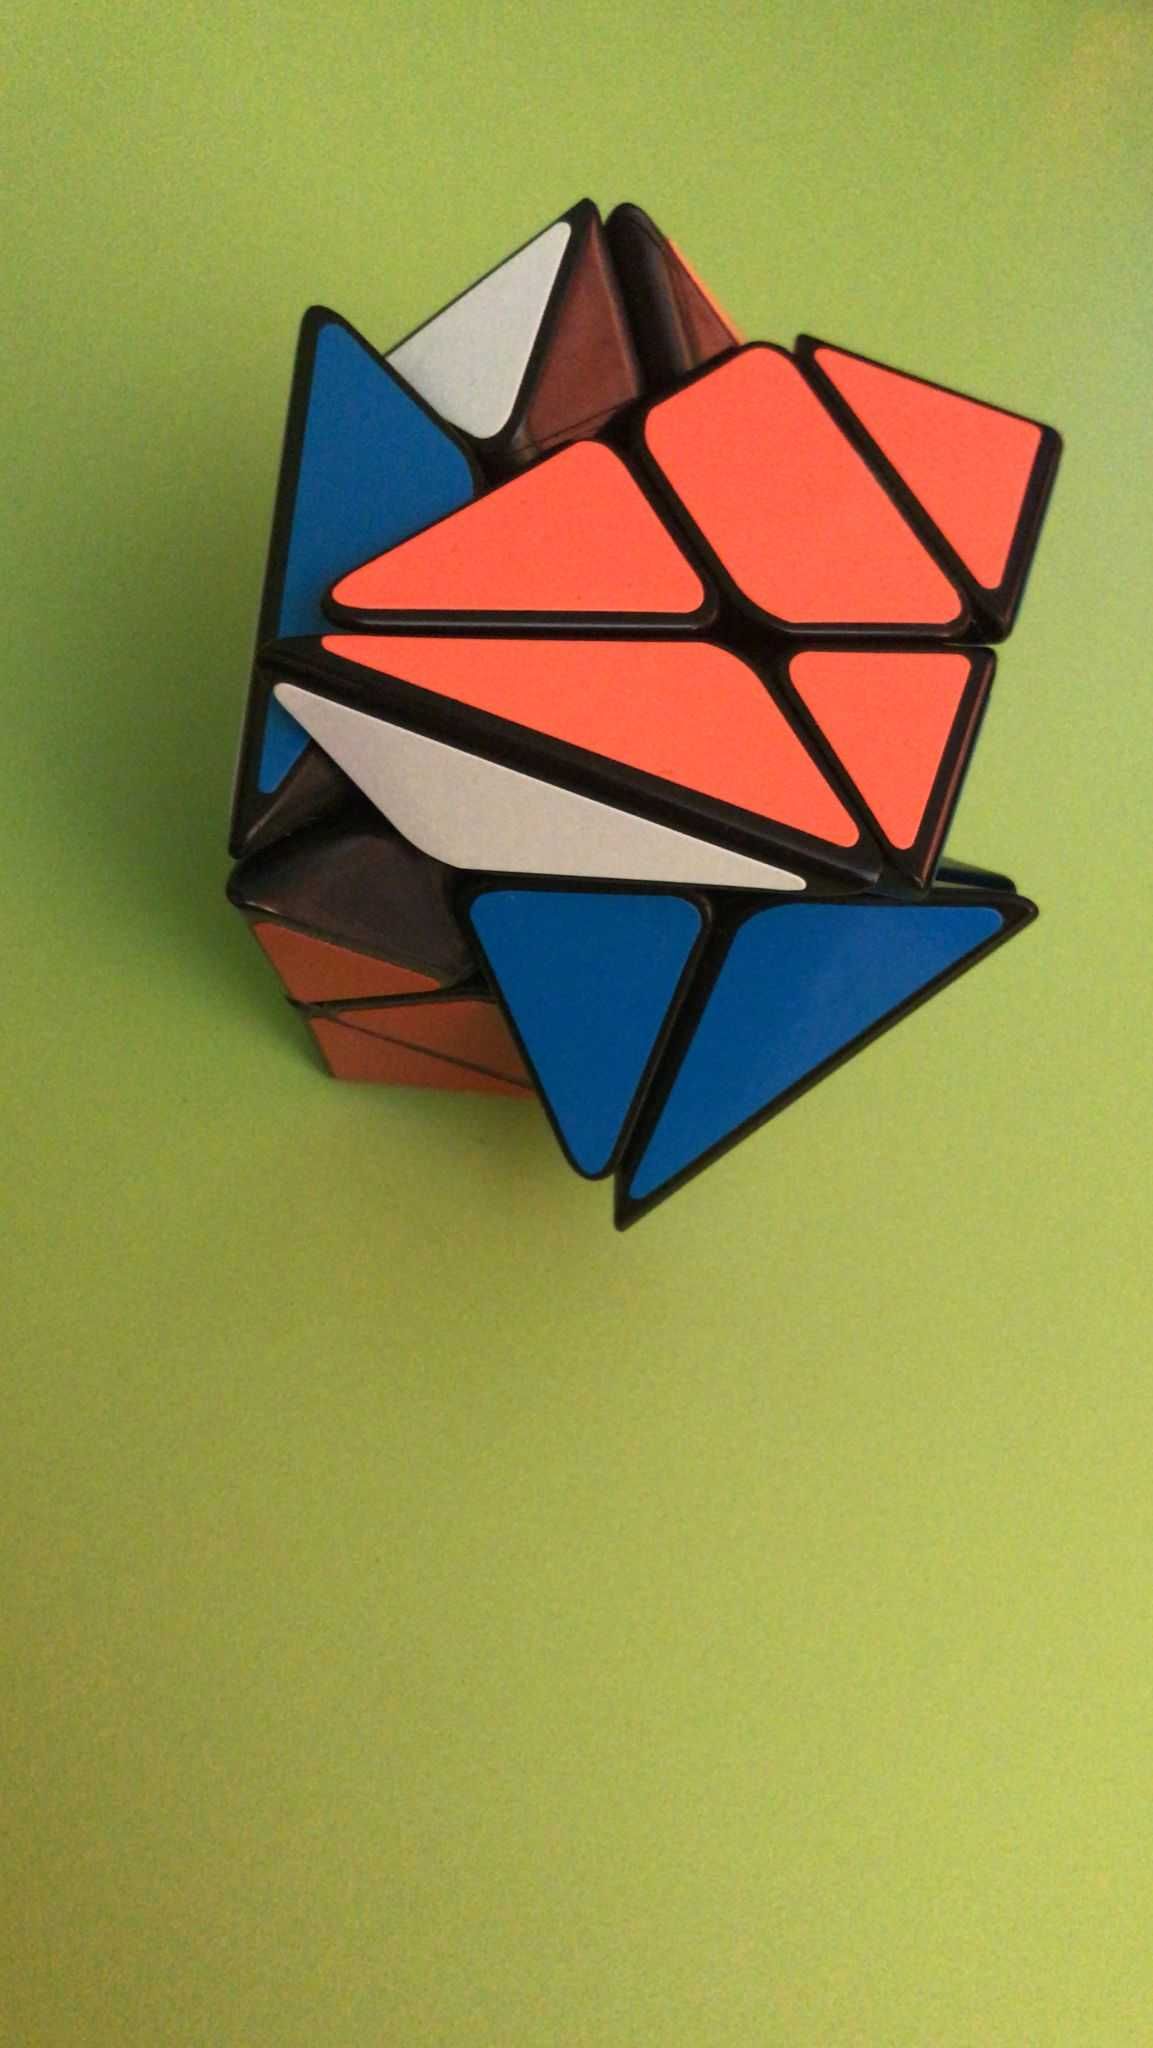 Cub rubik Axis cube